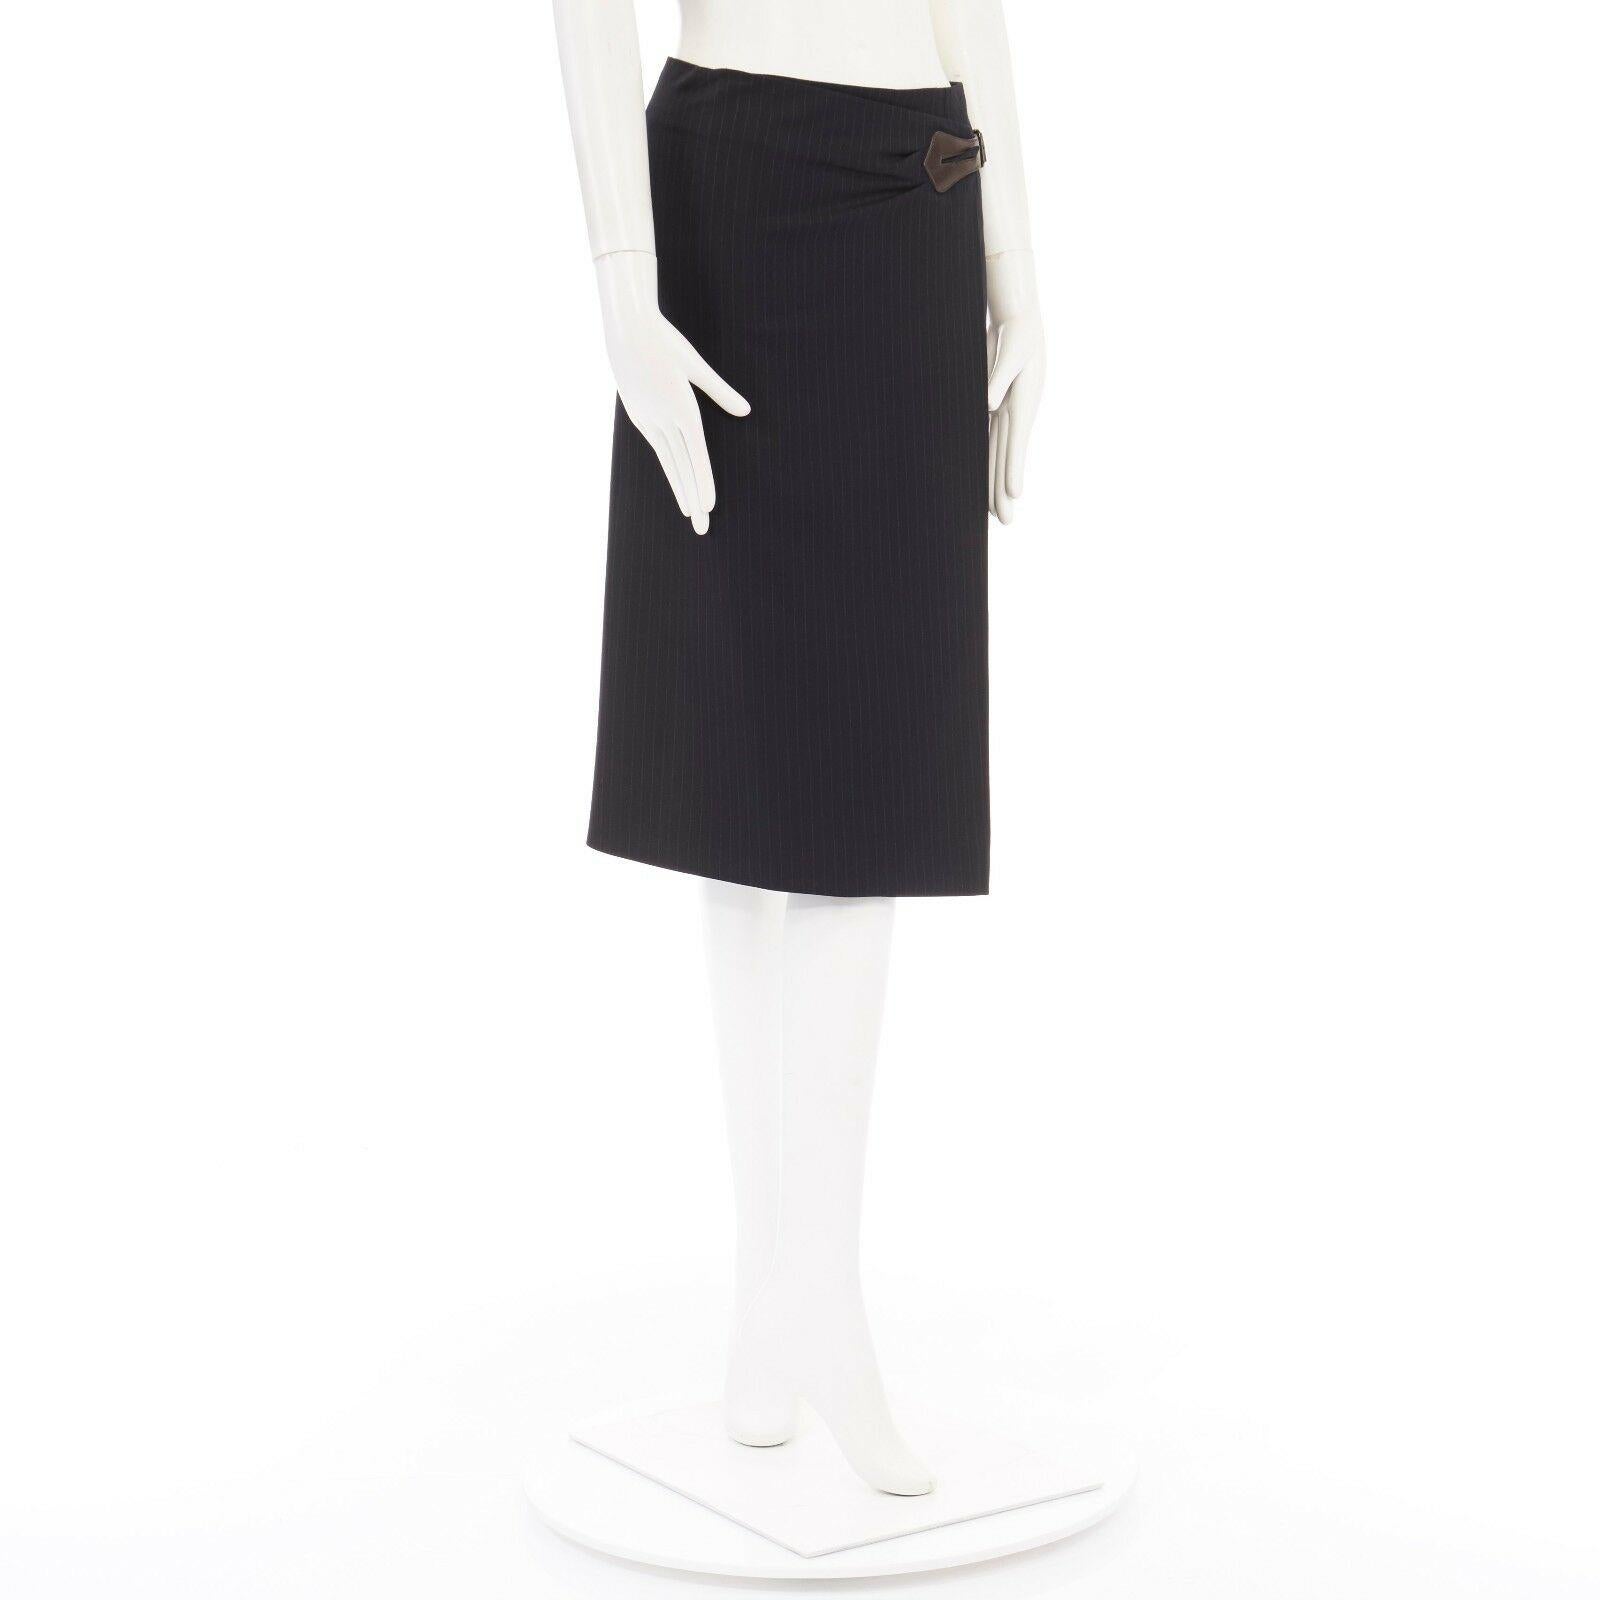 Black HERMES navy pinstripe virgin wool brown leather buckle wrap front skirt FR34 27